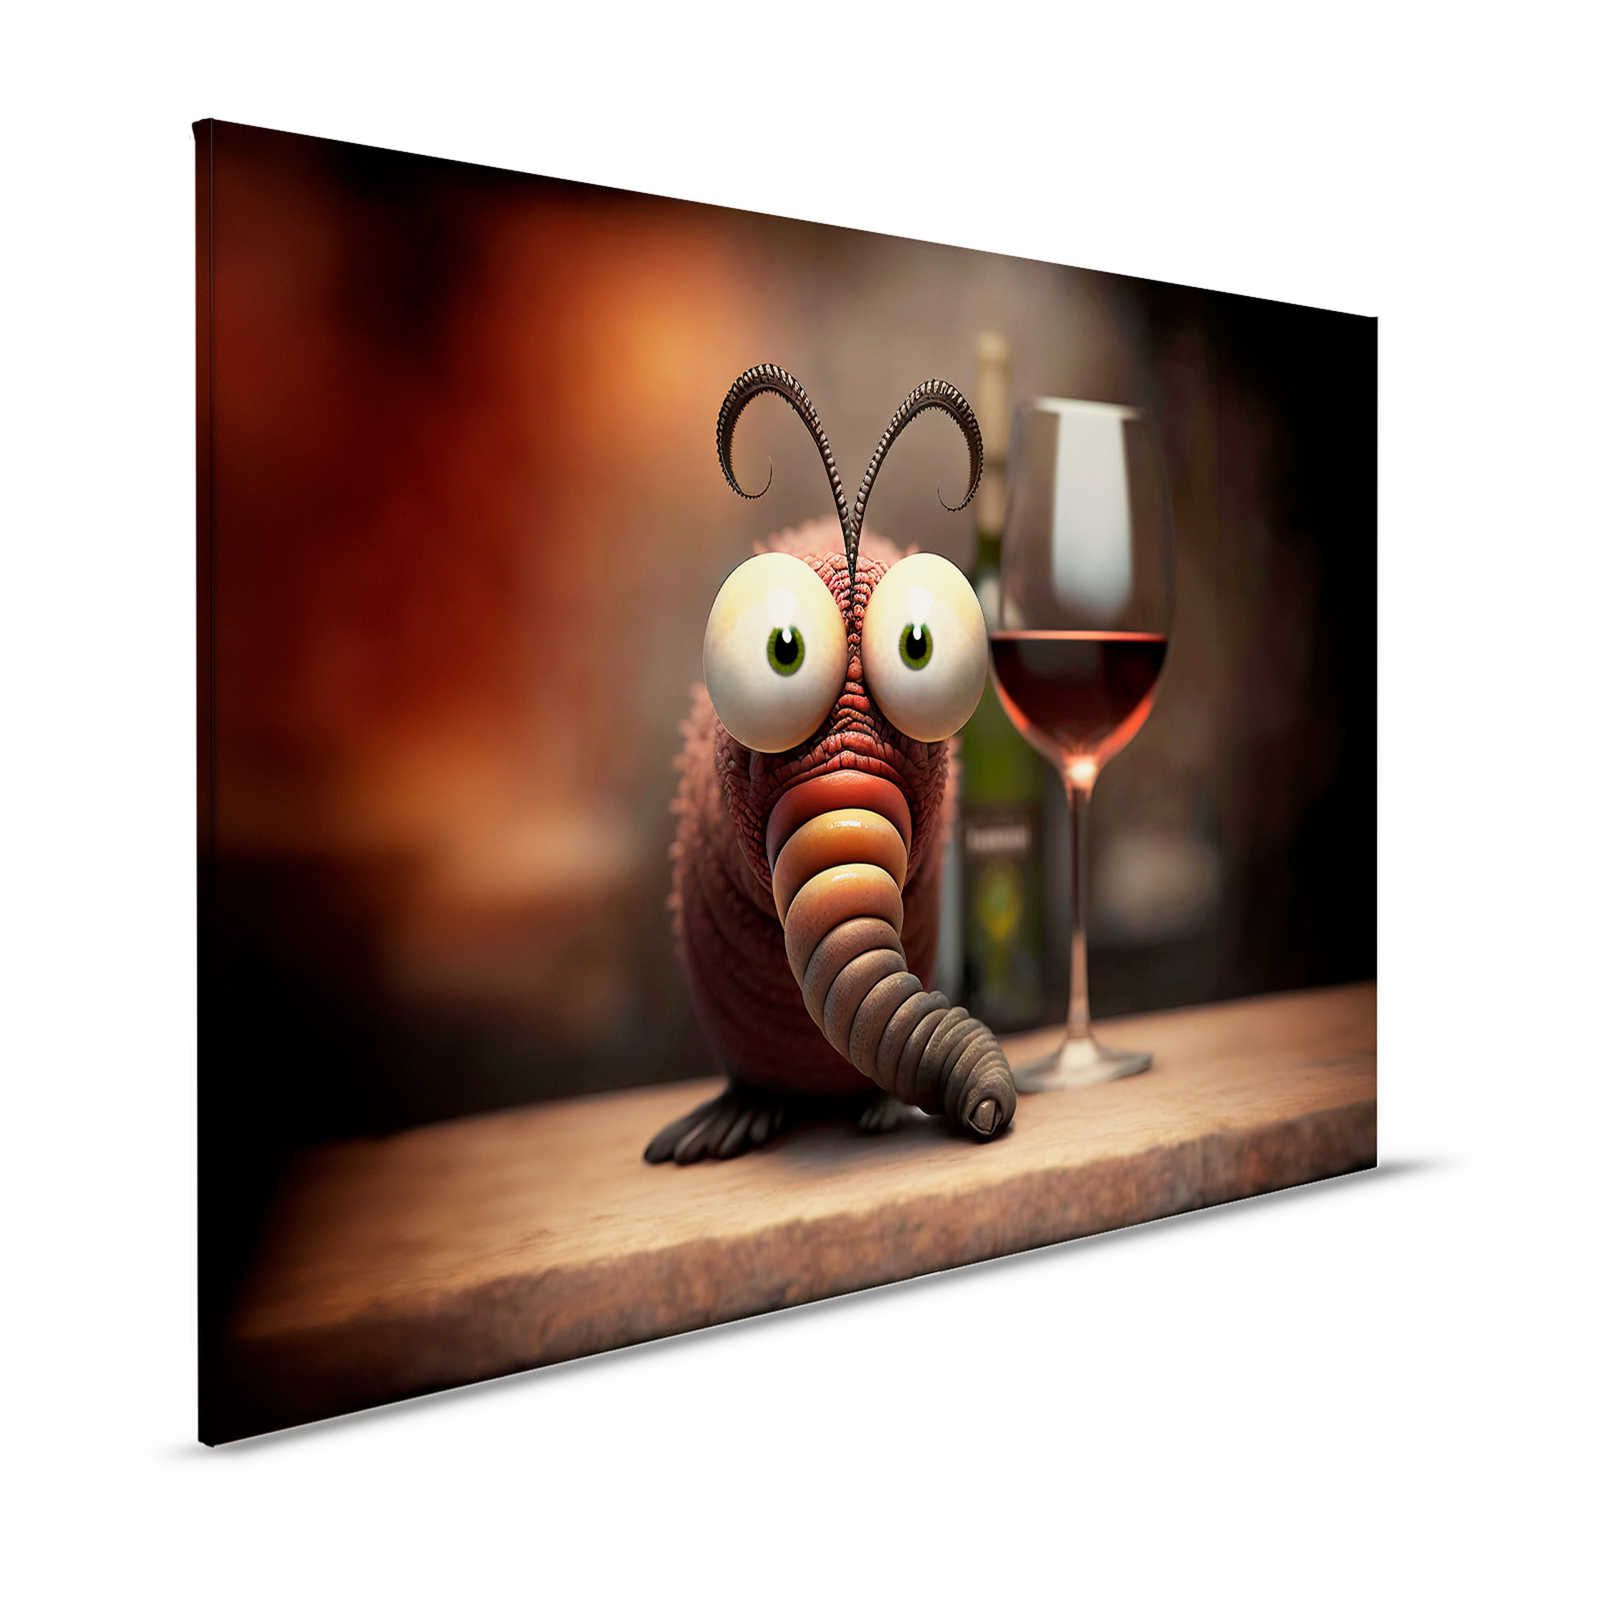 KI Canvas schilderij »winig worm« - 120 cm x 80 cm
